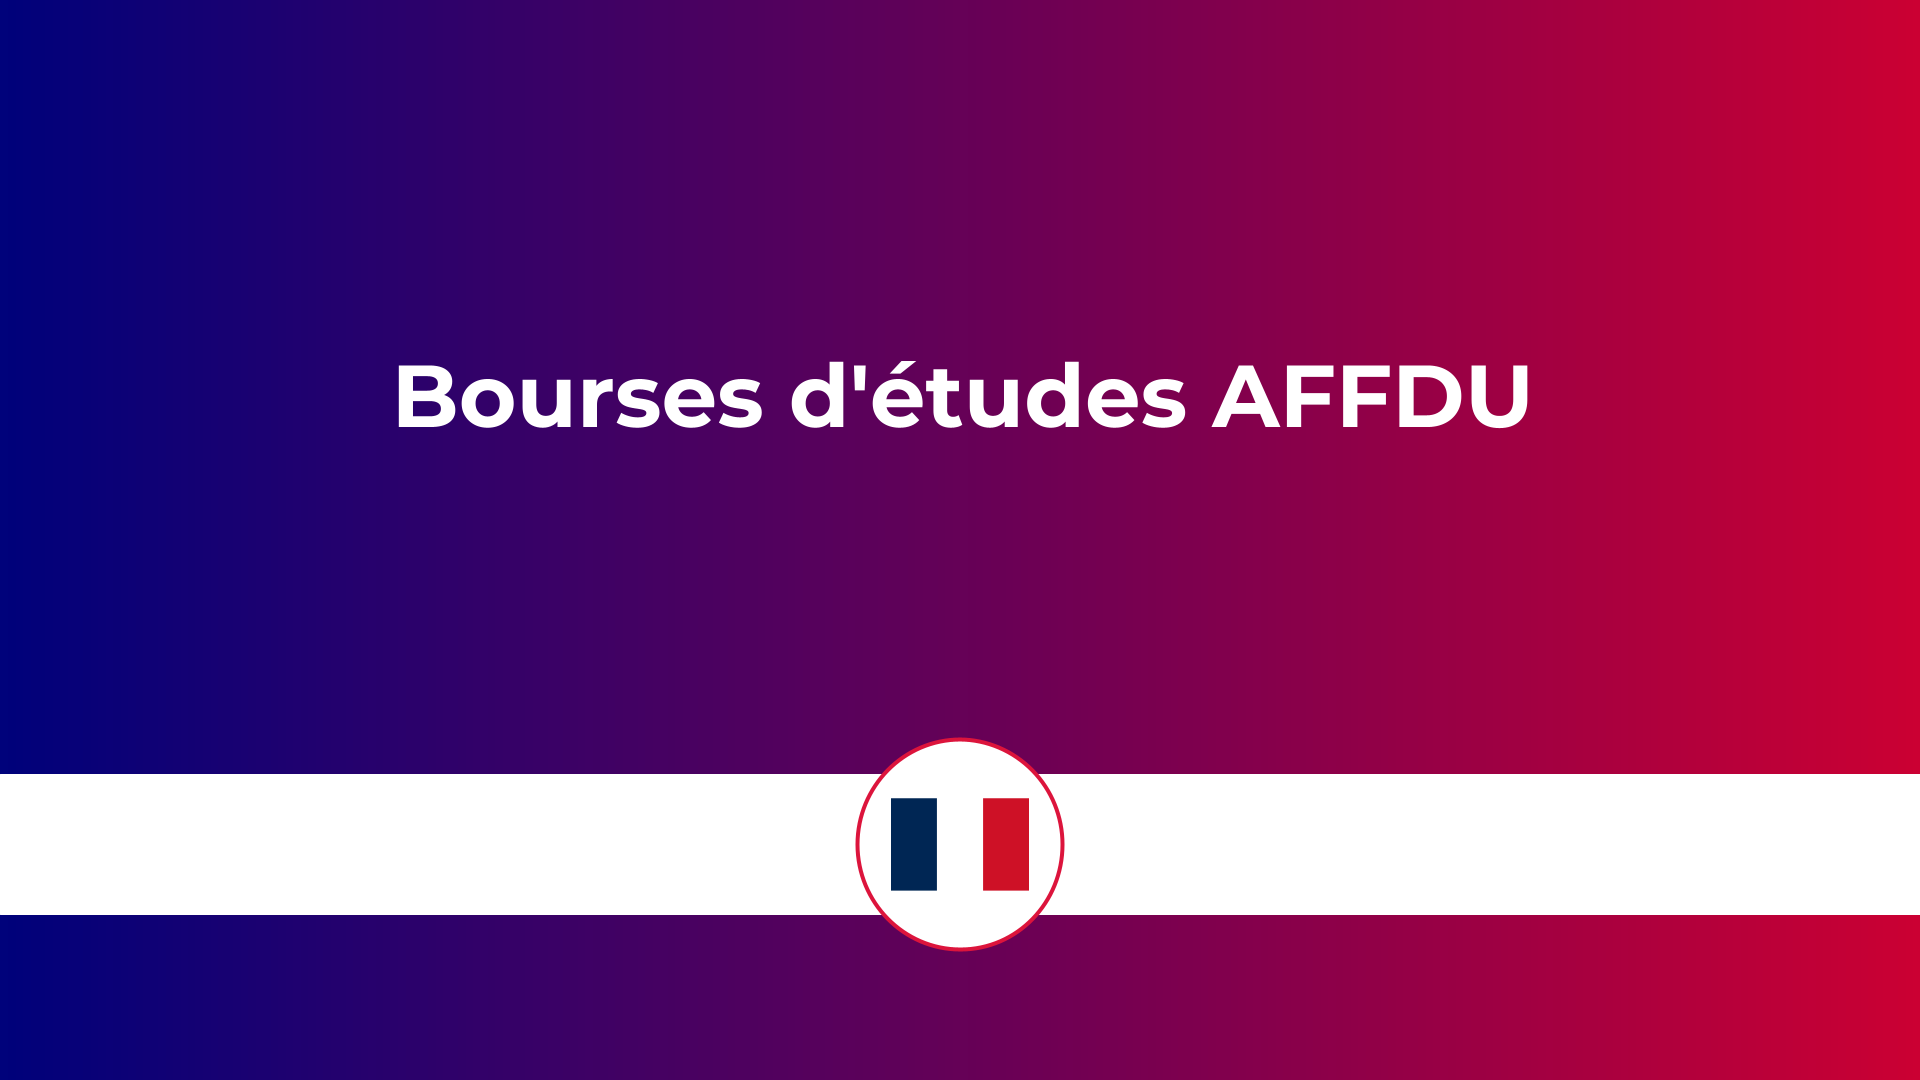 bourses d'études AFFDU en France